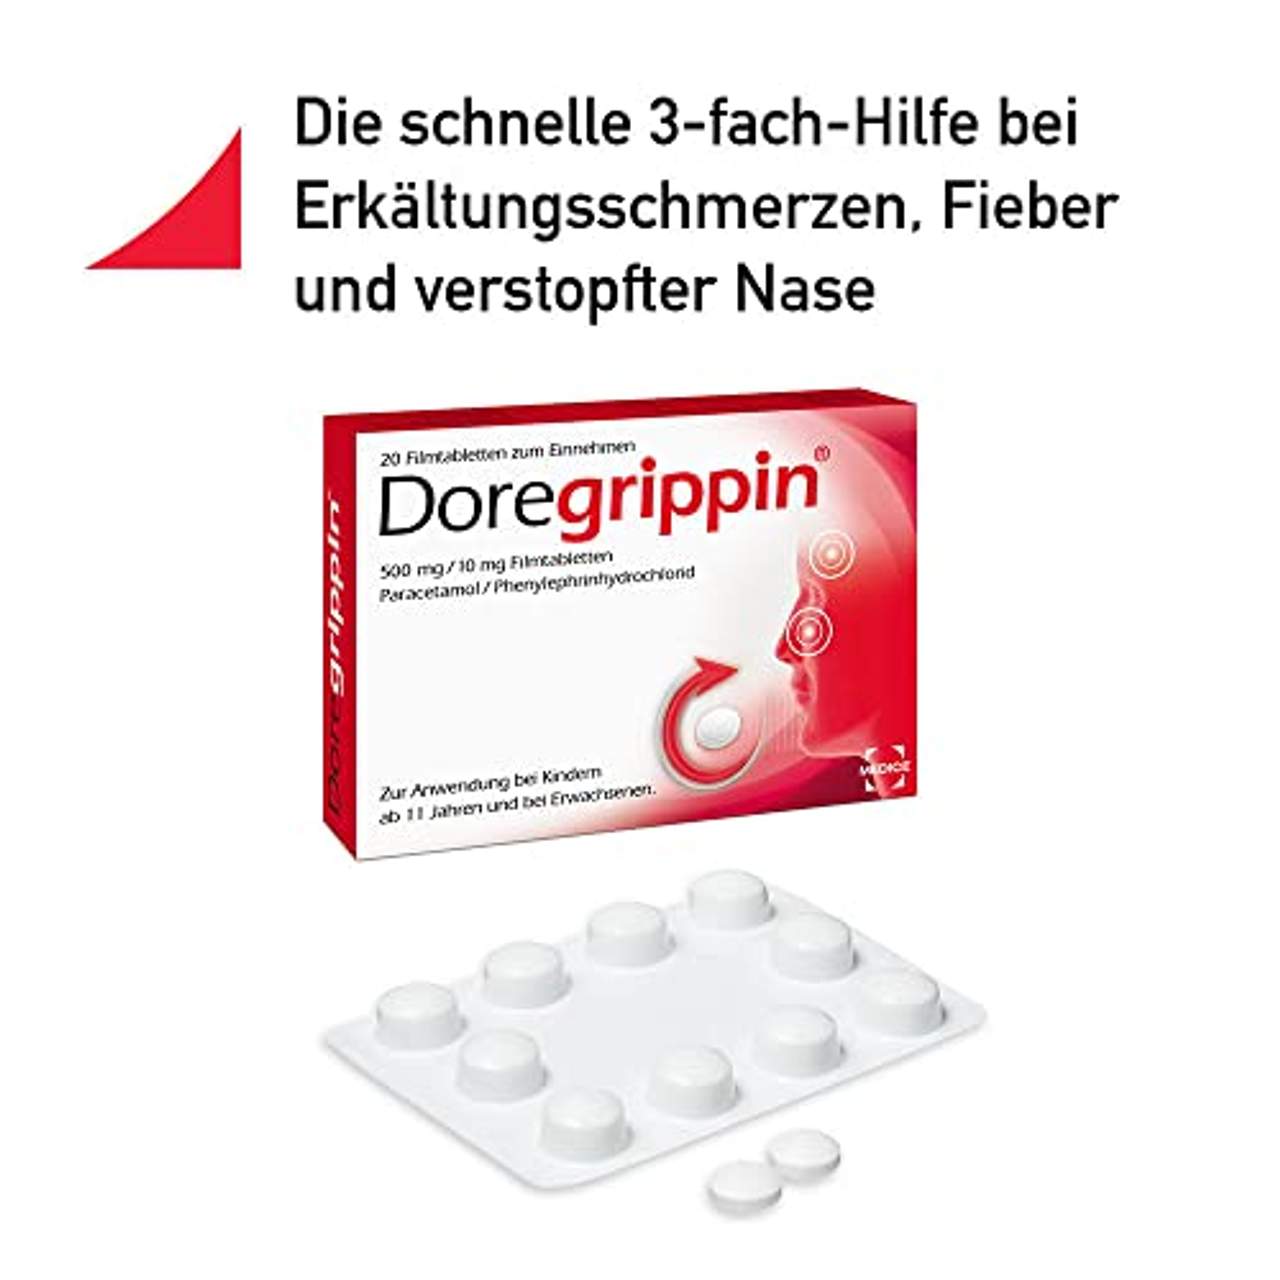 Doregrippin Die schnelle 3-fach-Hilfe bei Erkältungsschmerzen